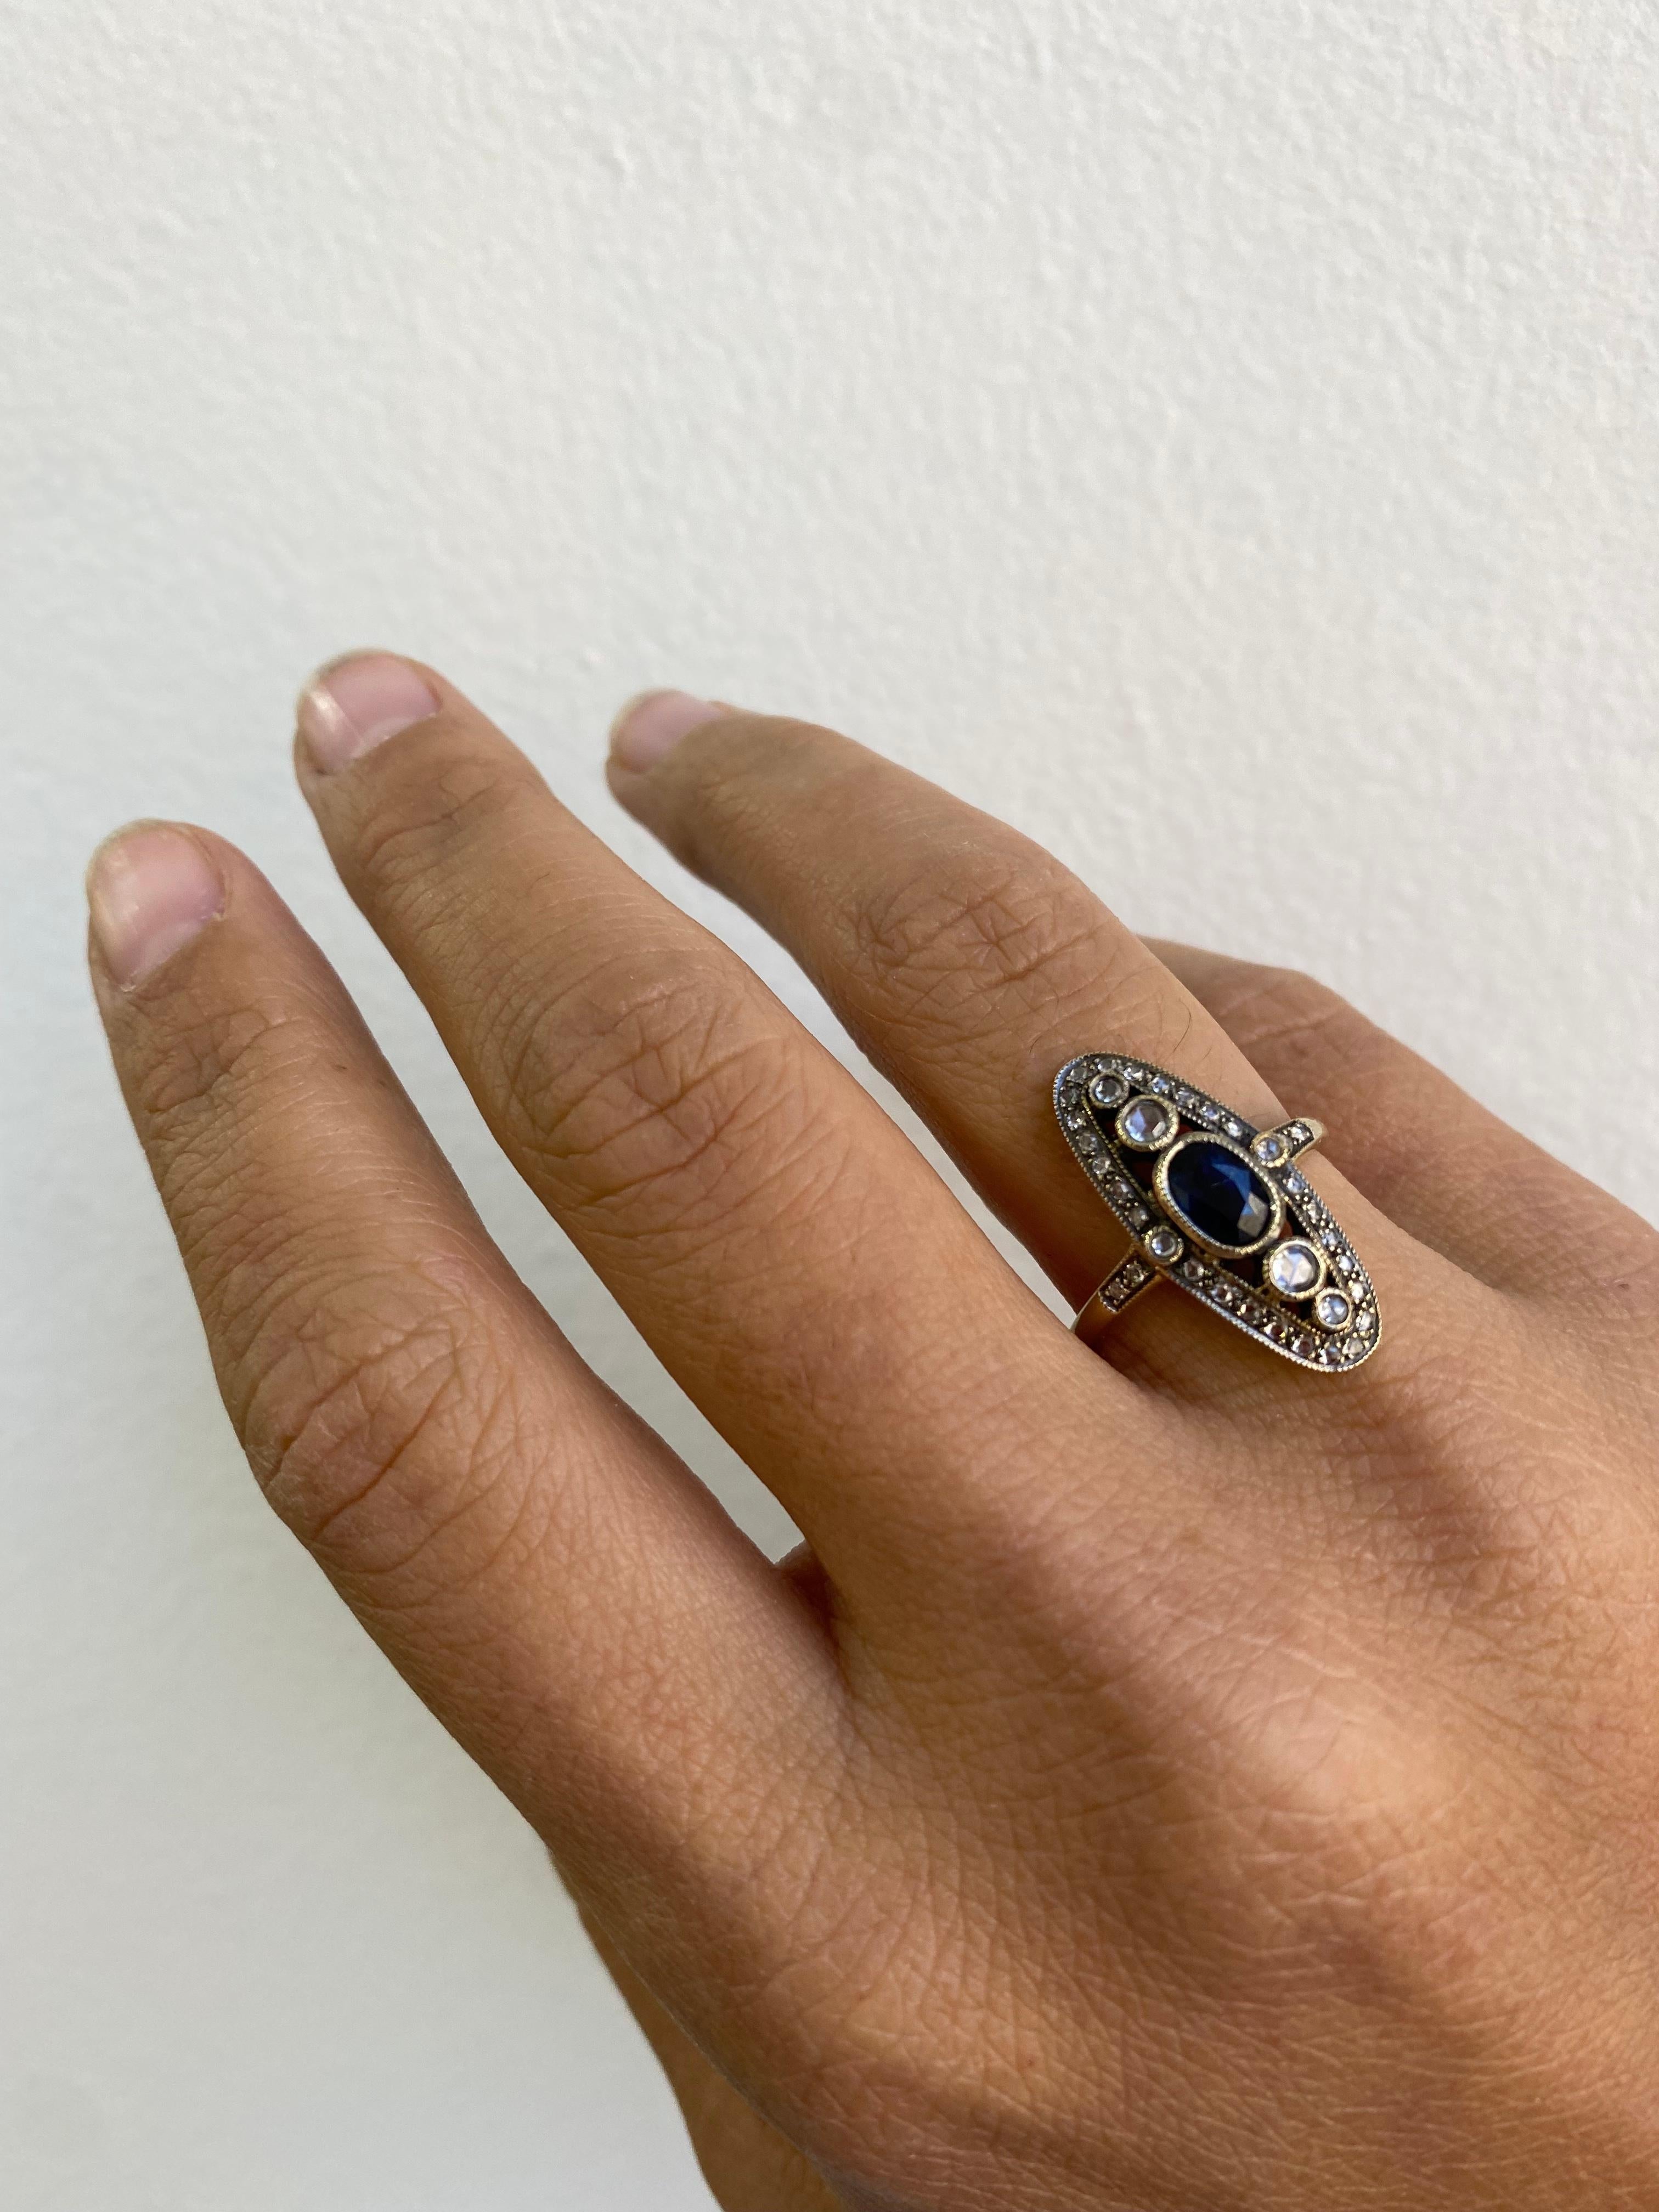 Langer ovaler Ring mit blauem Saphir und Diamanten 

Dieses elegante Art-Déco-Revival zeichnet sich durch einen ovalen blauen Saphir von 0,75 Karat in der Mitte aus, der mit Diamanten im Rosenschliff in Goldfassung und runden Diamanten im